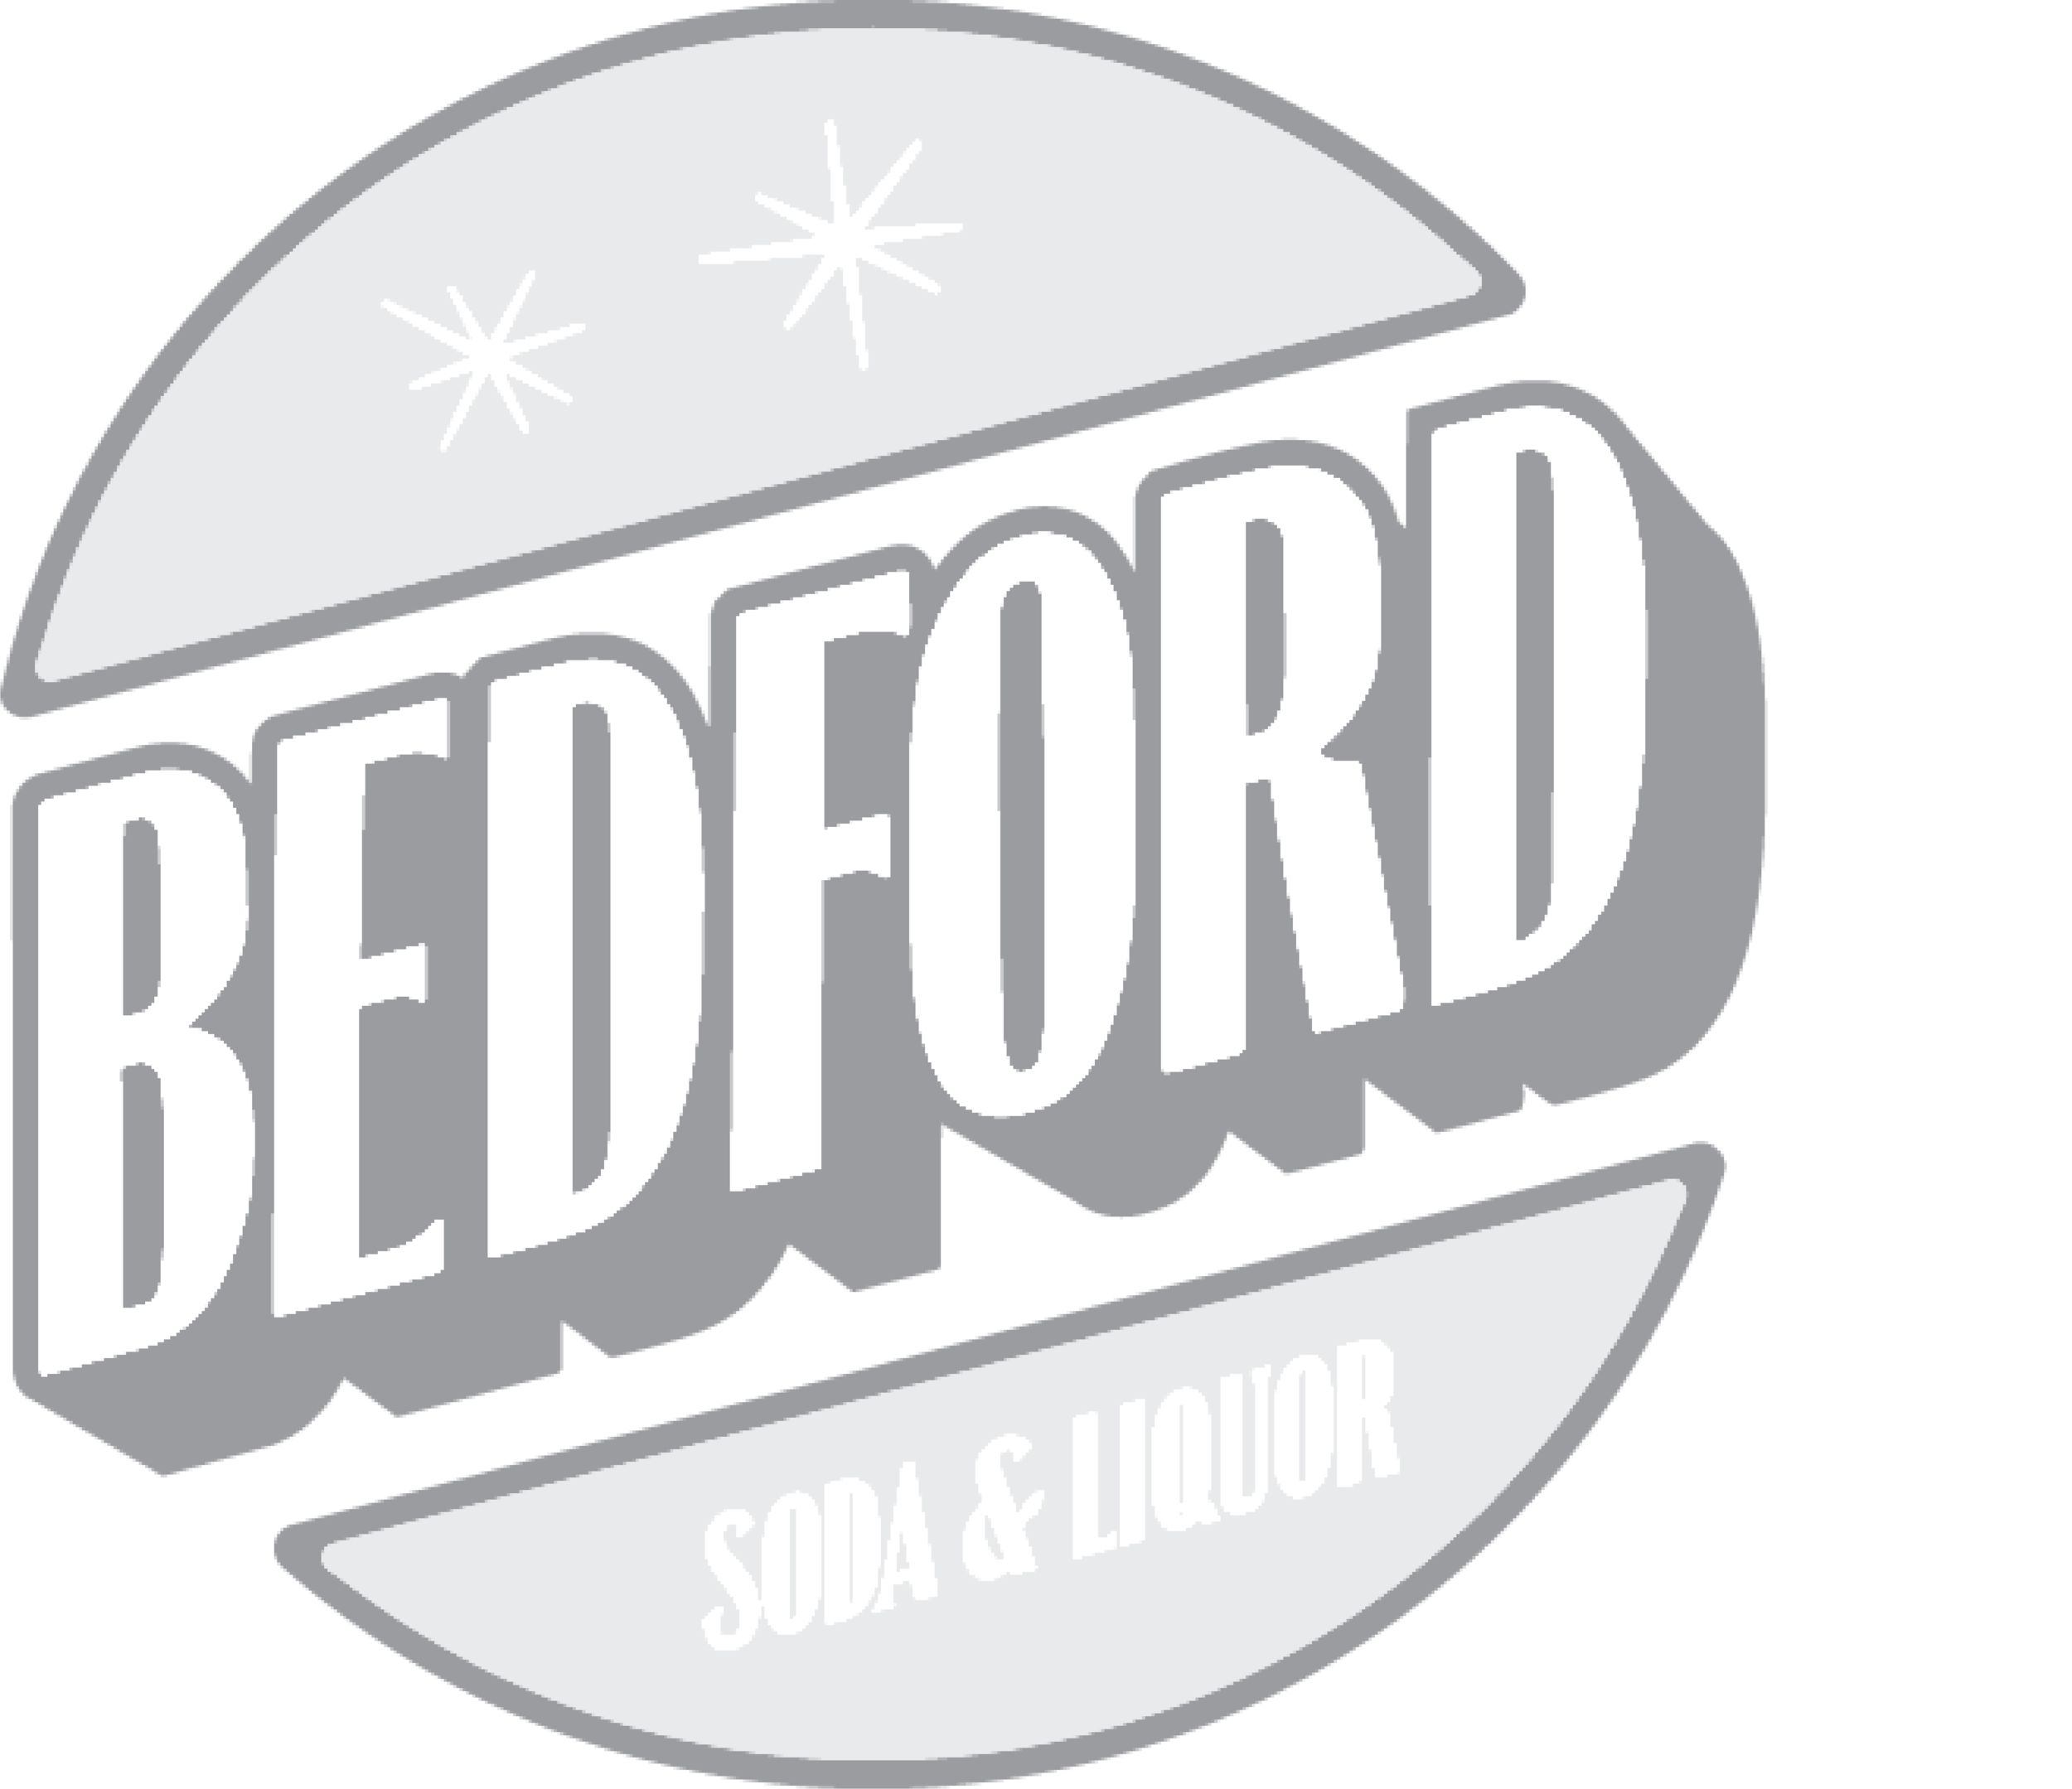 Bedford logo.png